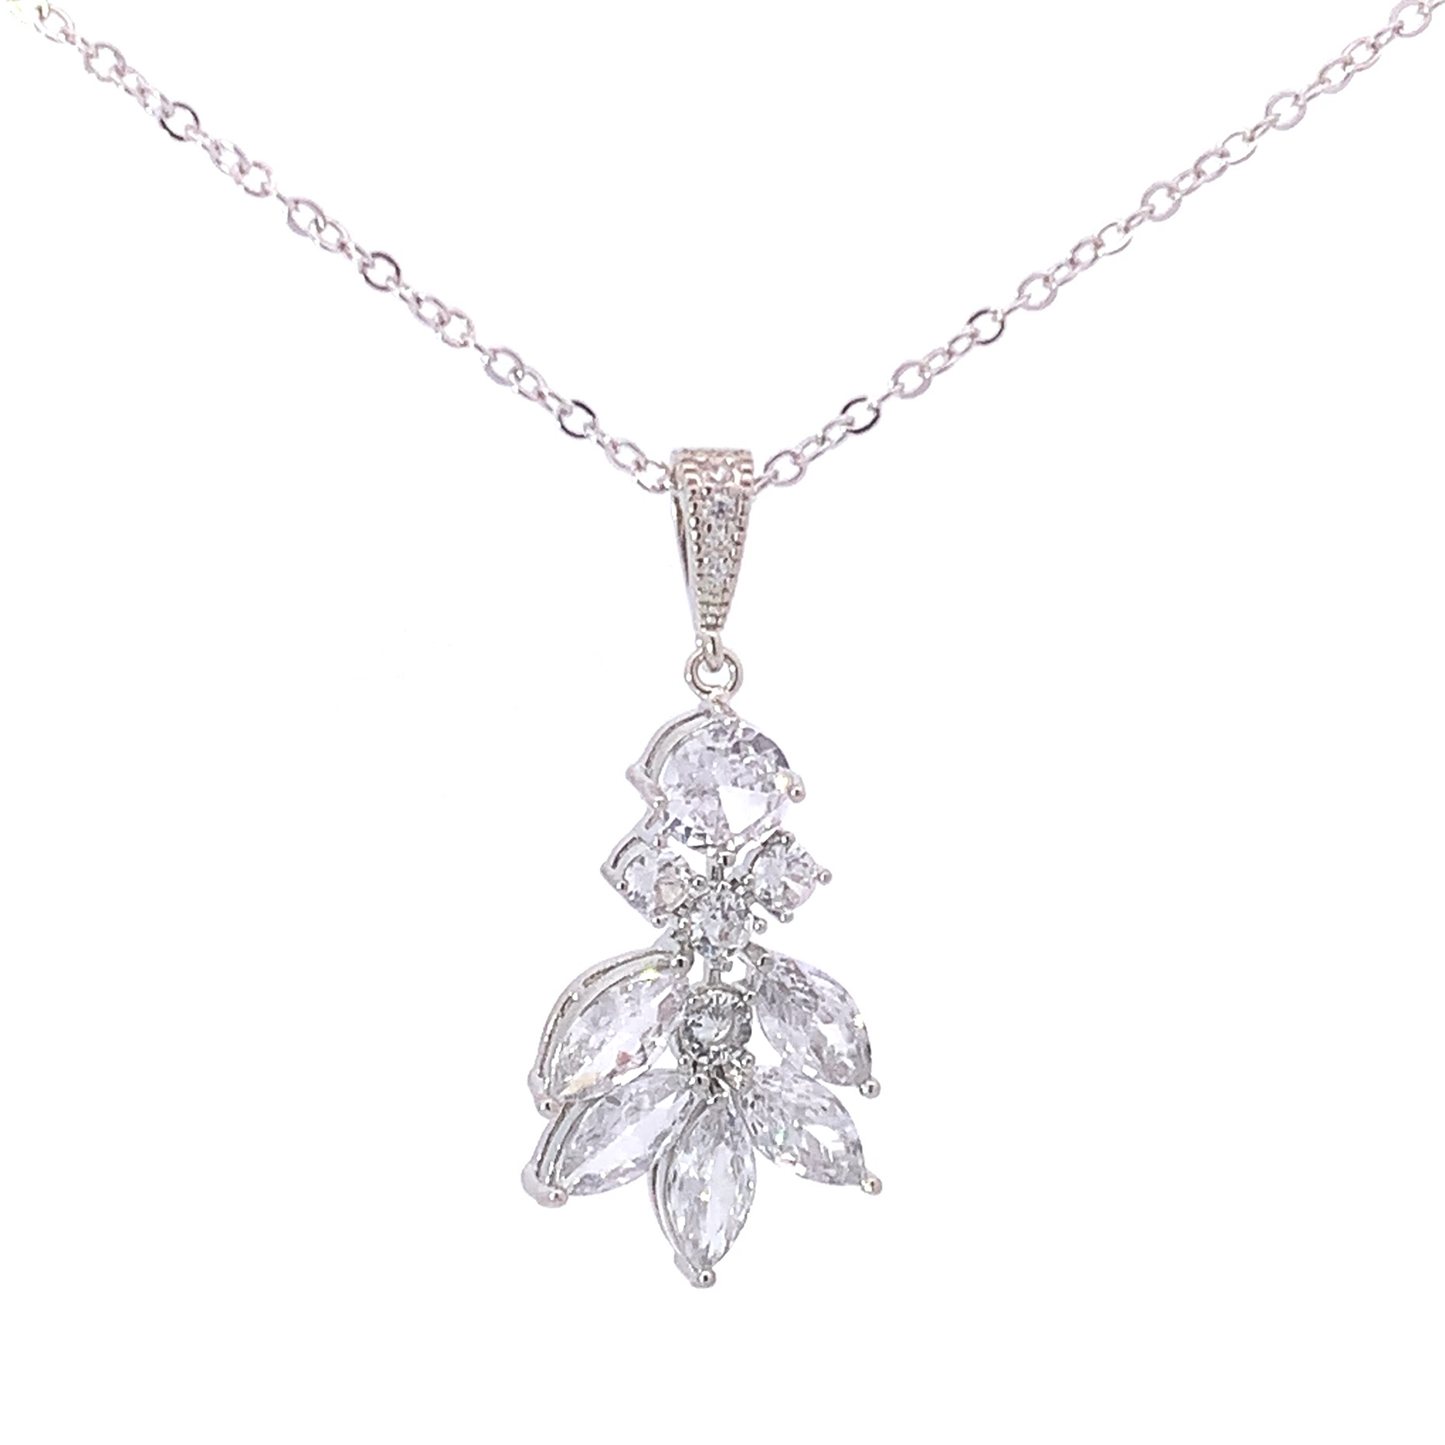 Theodora bridal necklace silver